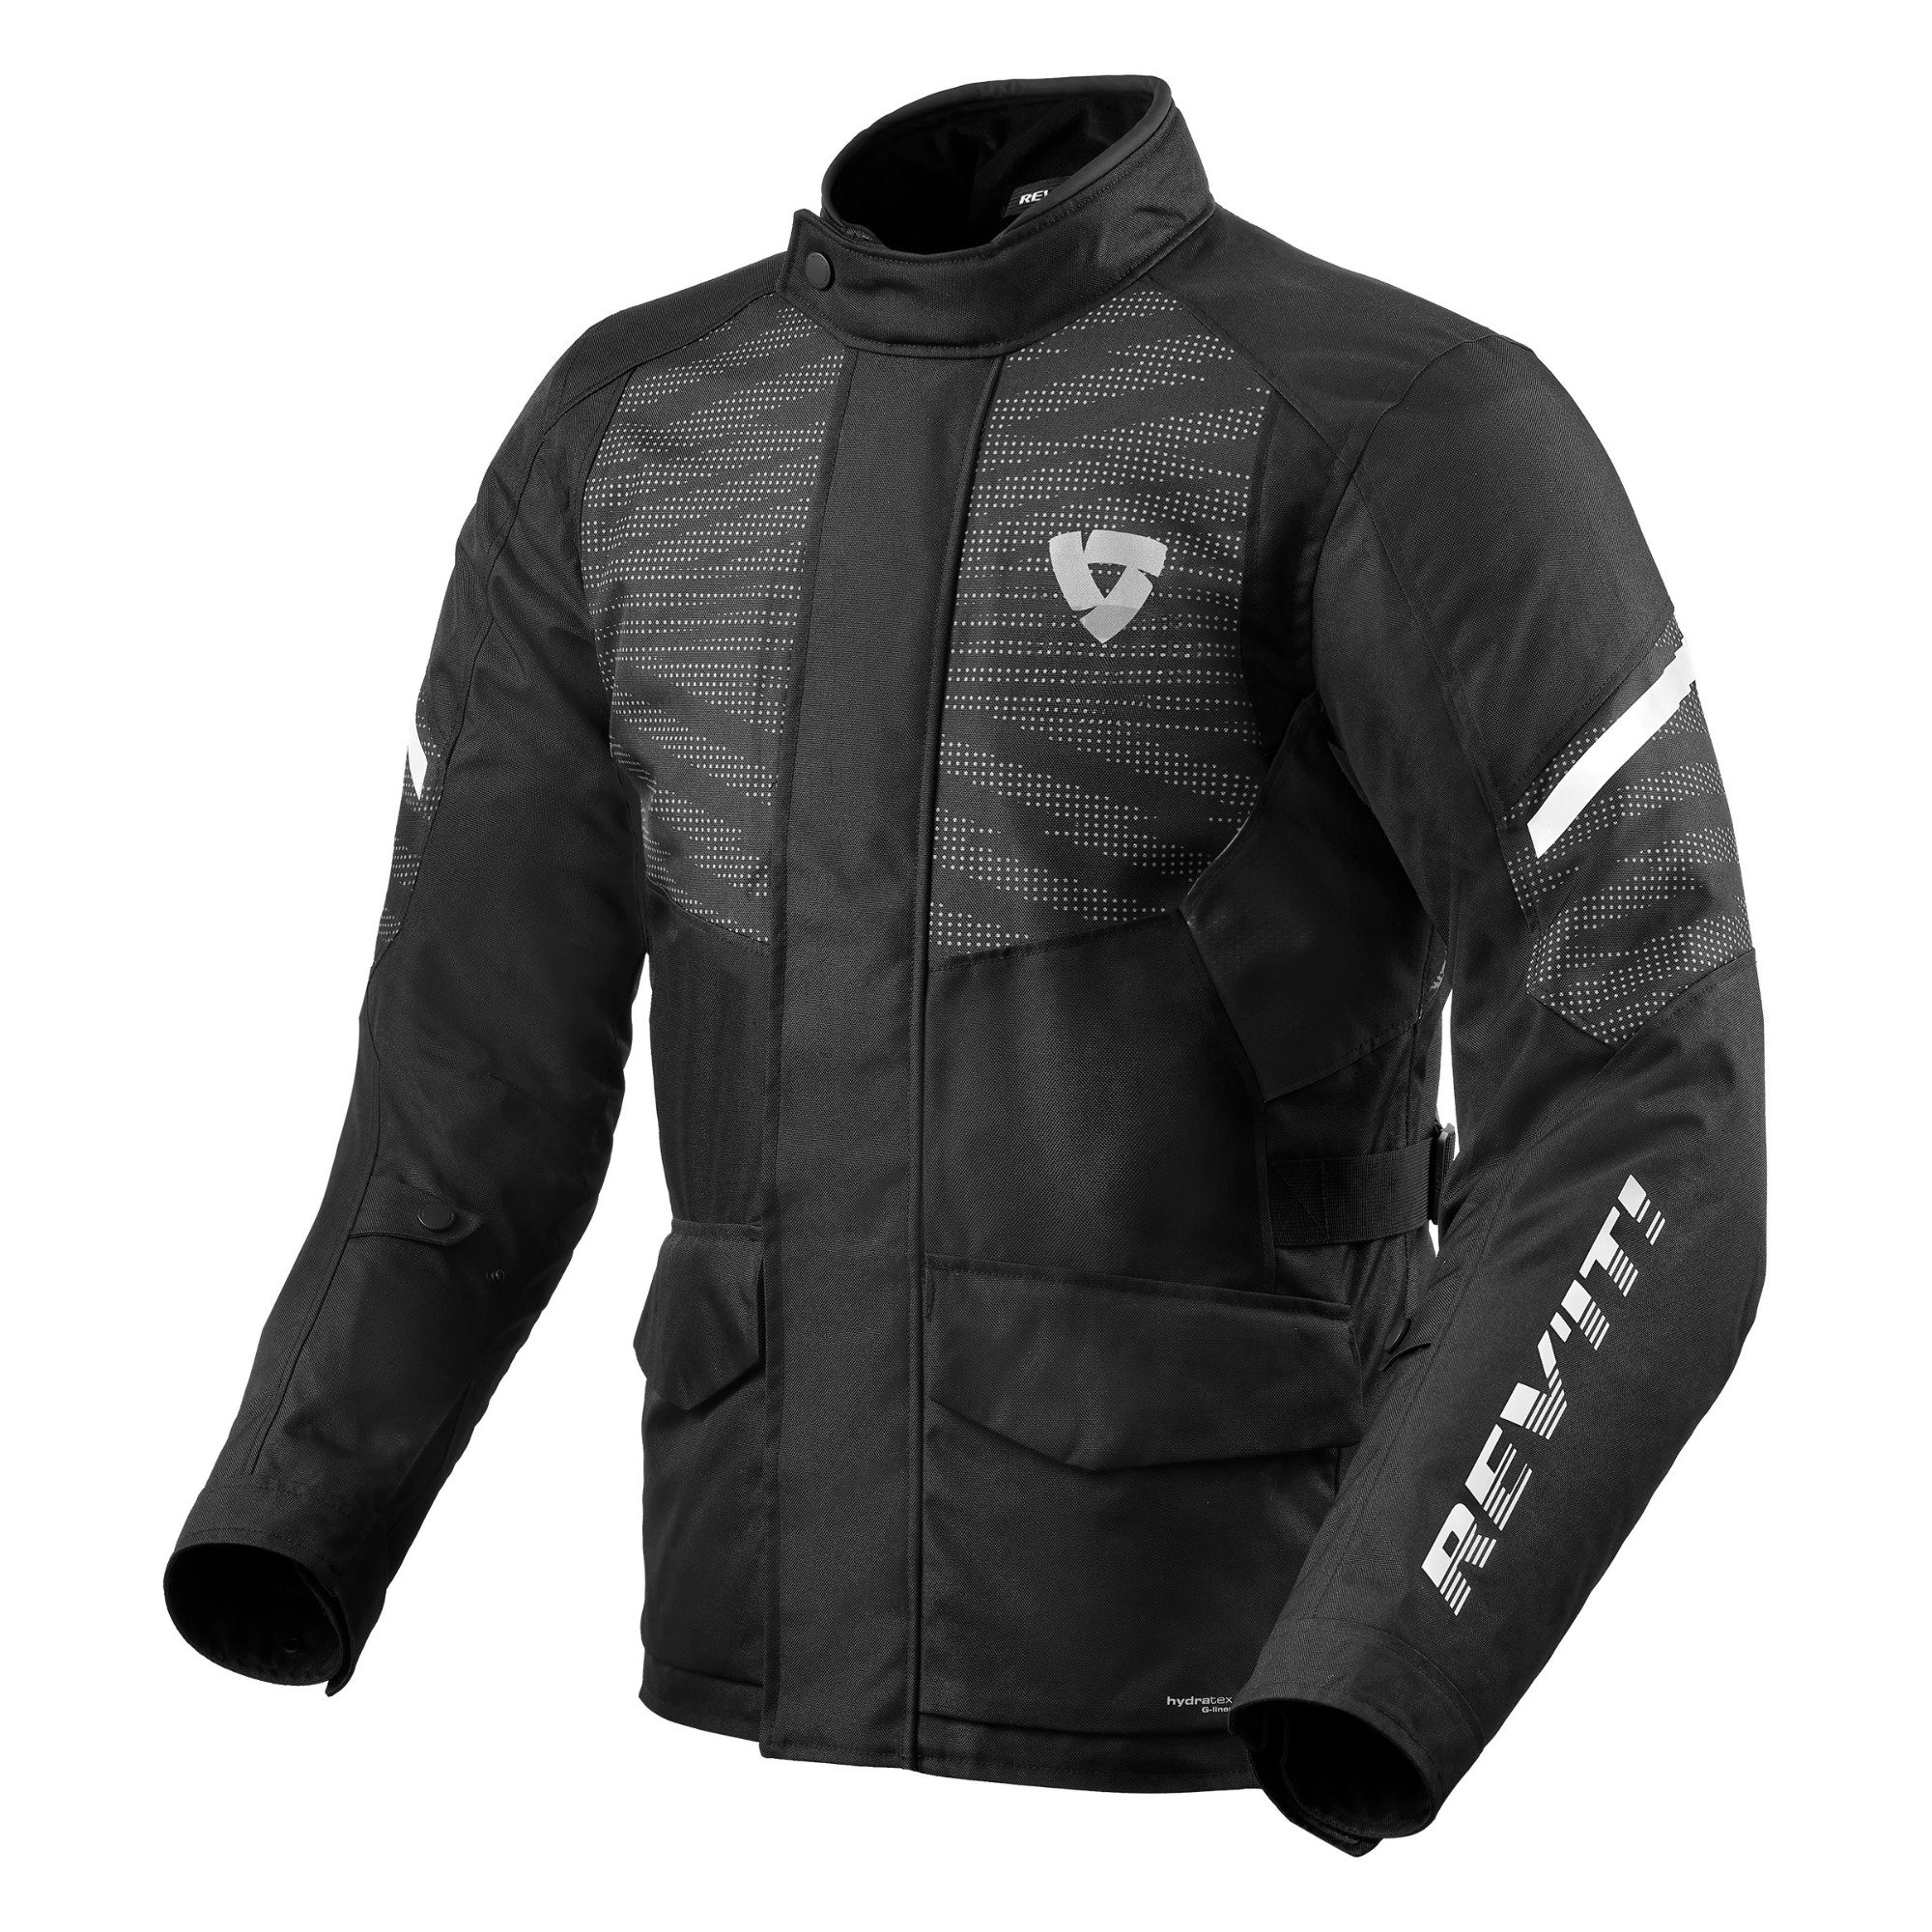 Image of REV'IT! Duke H2O Jacket Black Size S ID 8700001331937